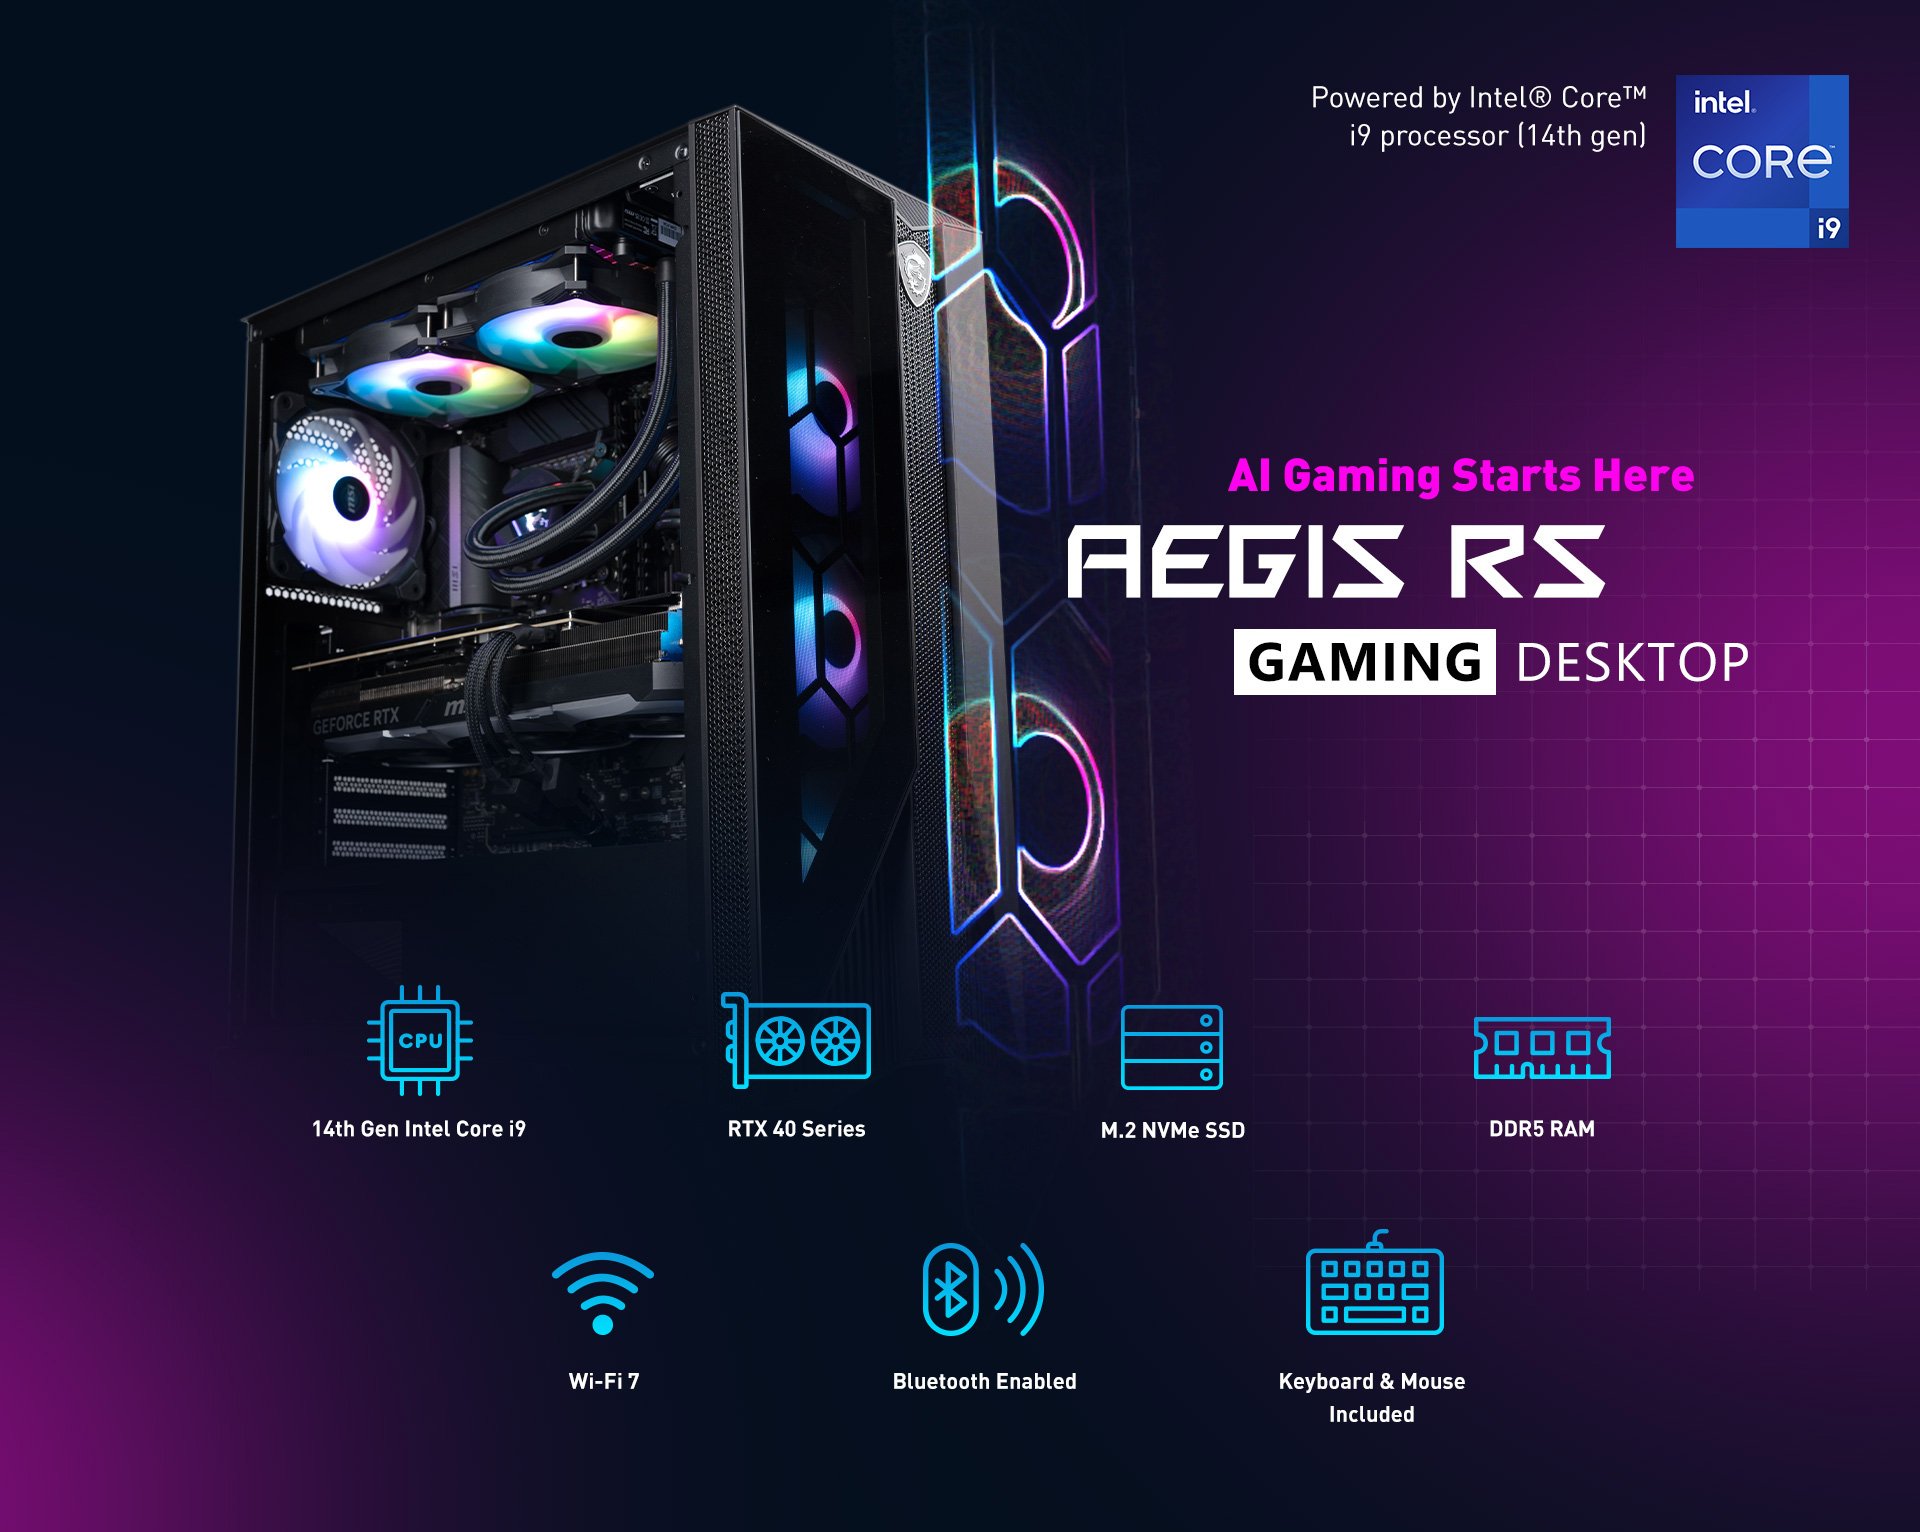 Aegis RS Gaming Desktop